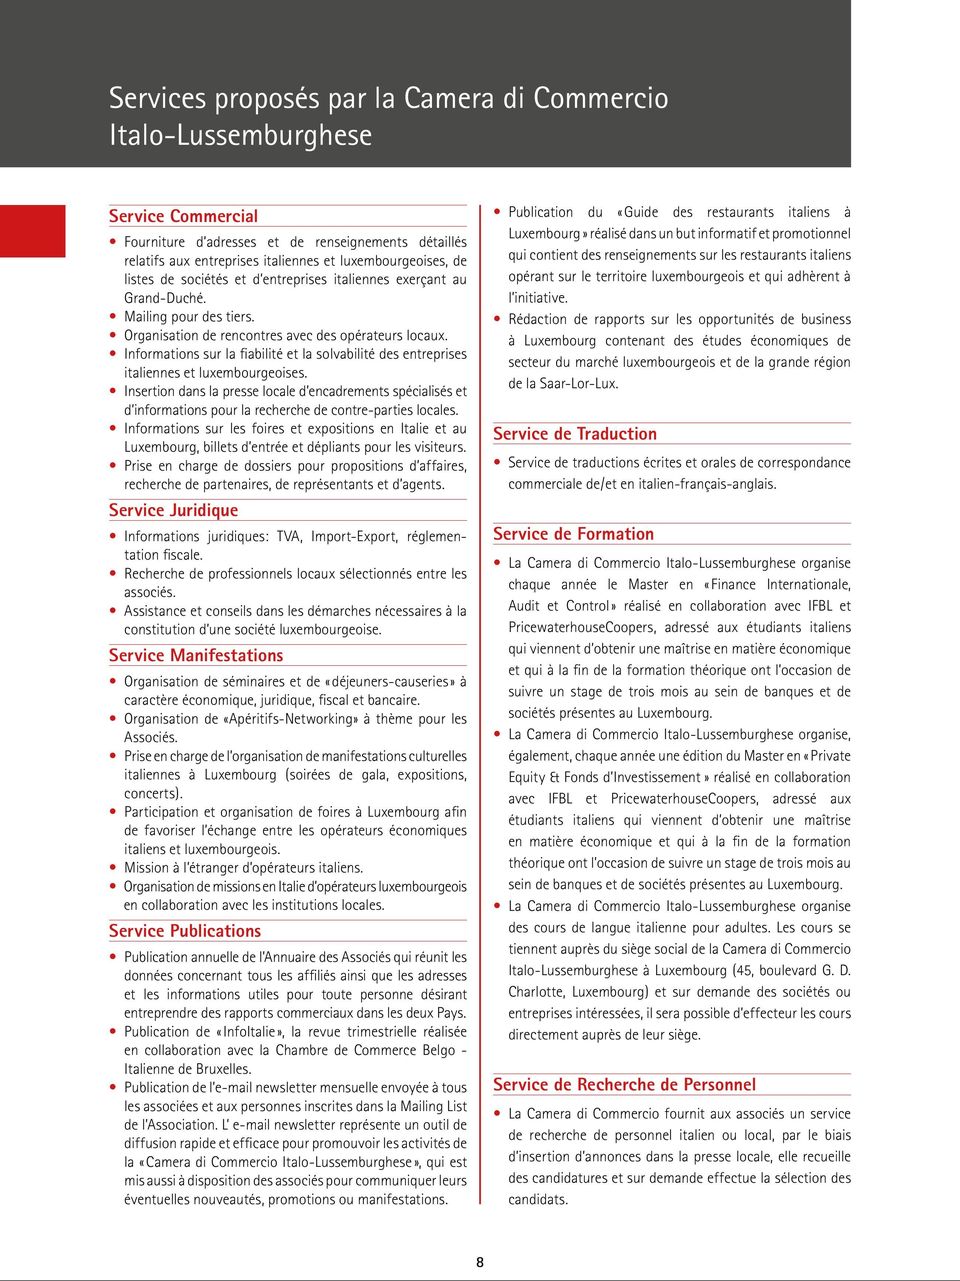 Informations sur la fiabilité et la solvabilité des entreprises italiennes et luxembourgeoises.